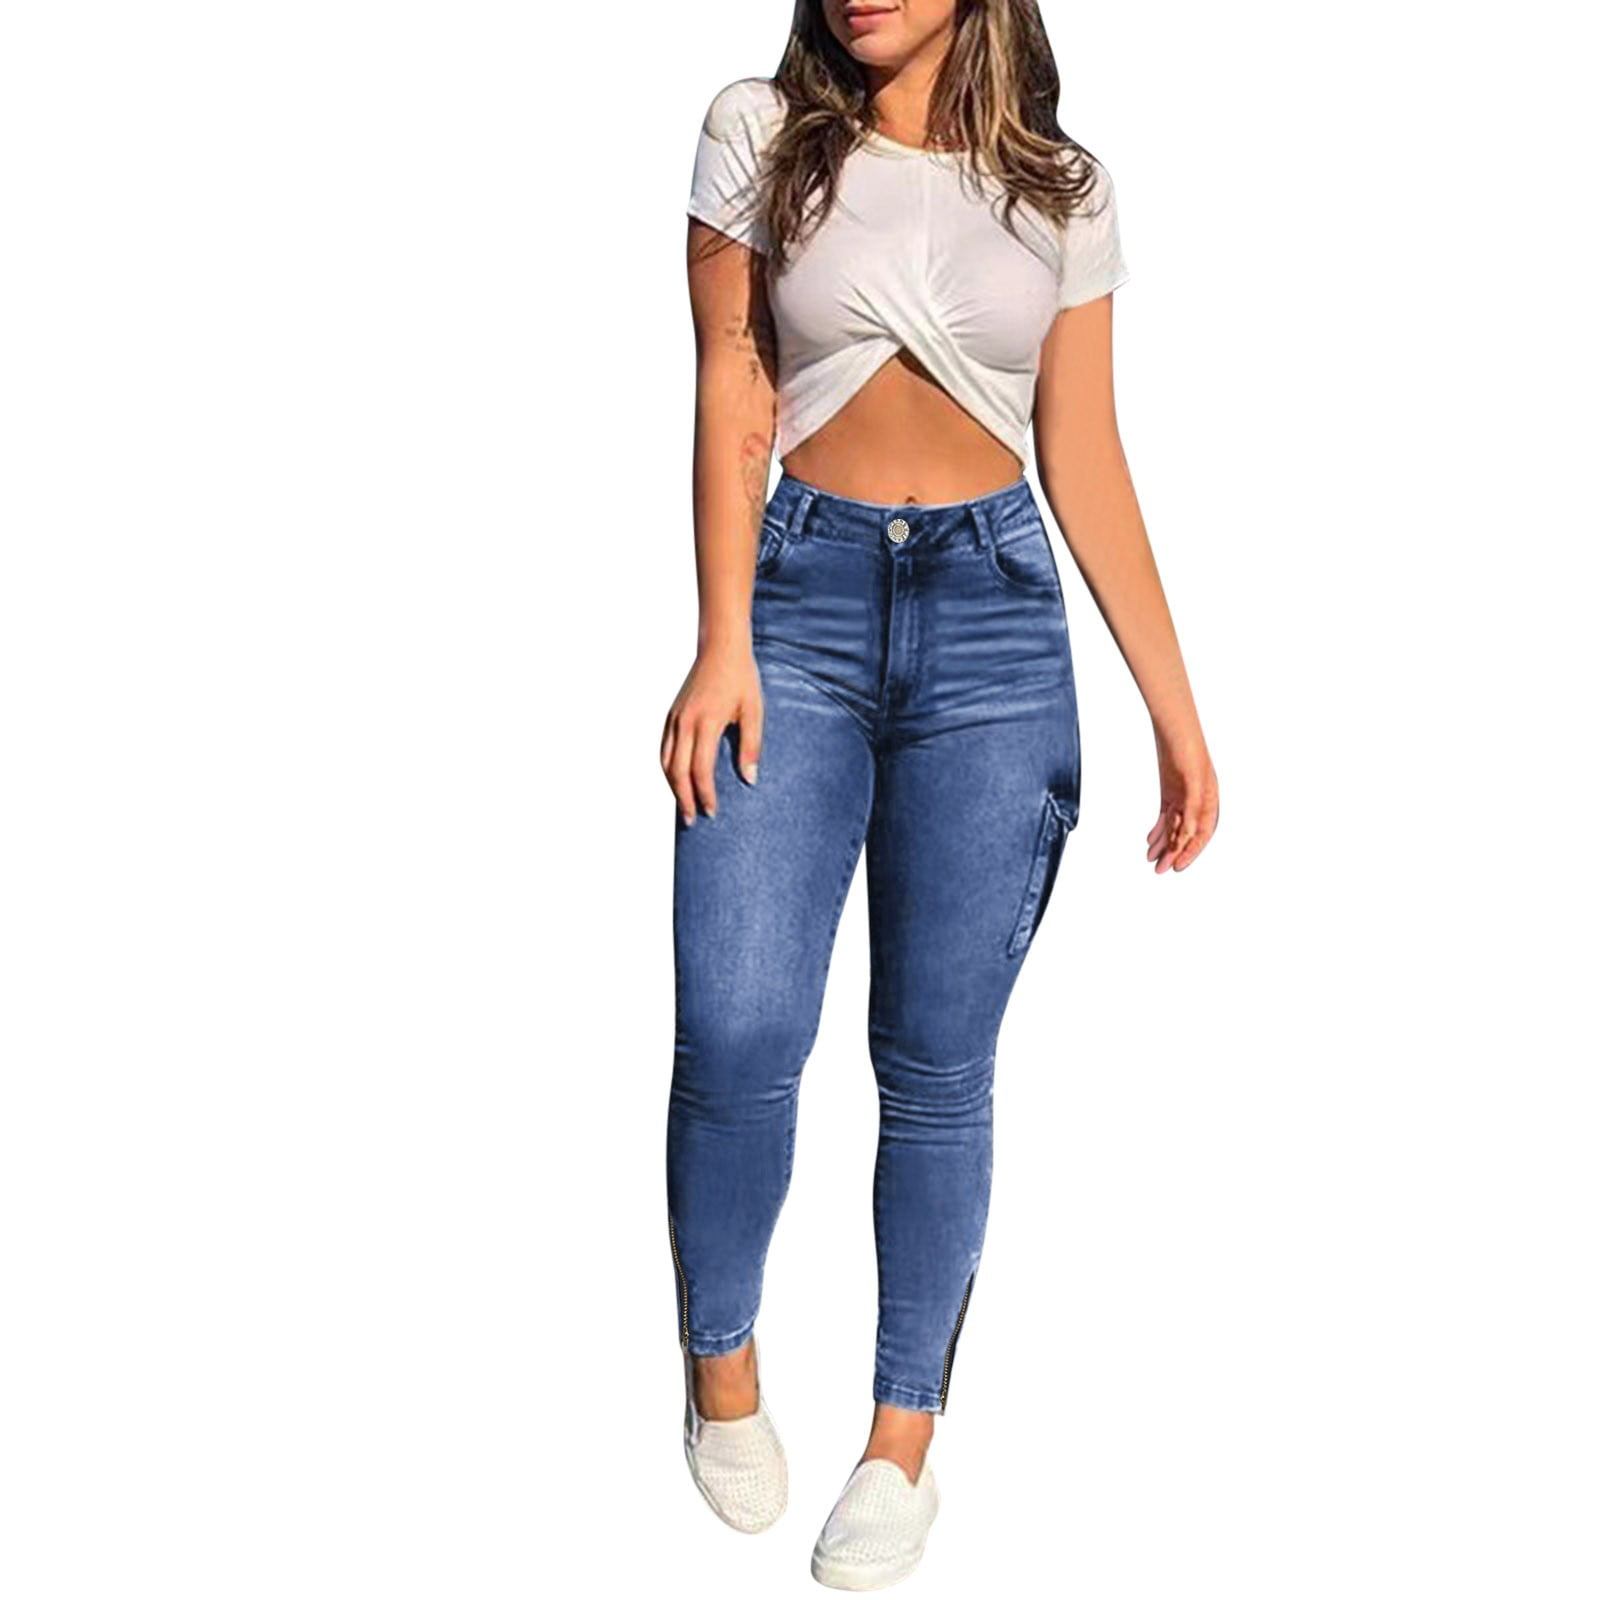 CBGELRT Trendy Jeans for Women High Waist Female Black Jeggings